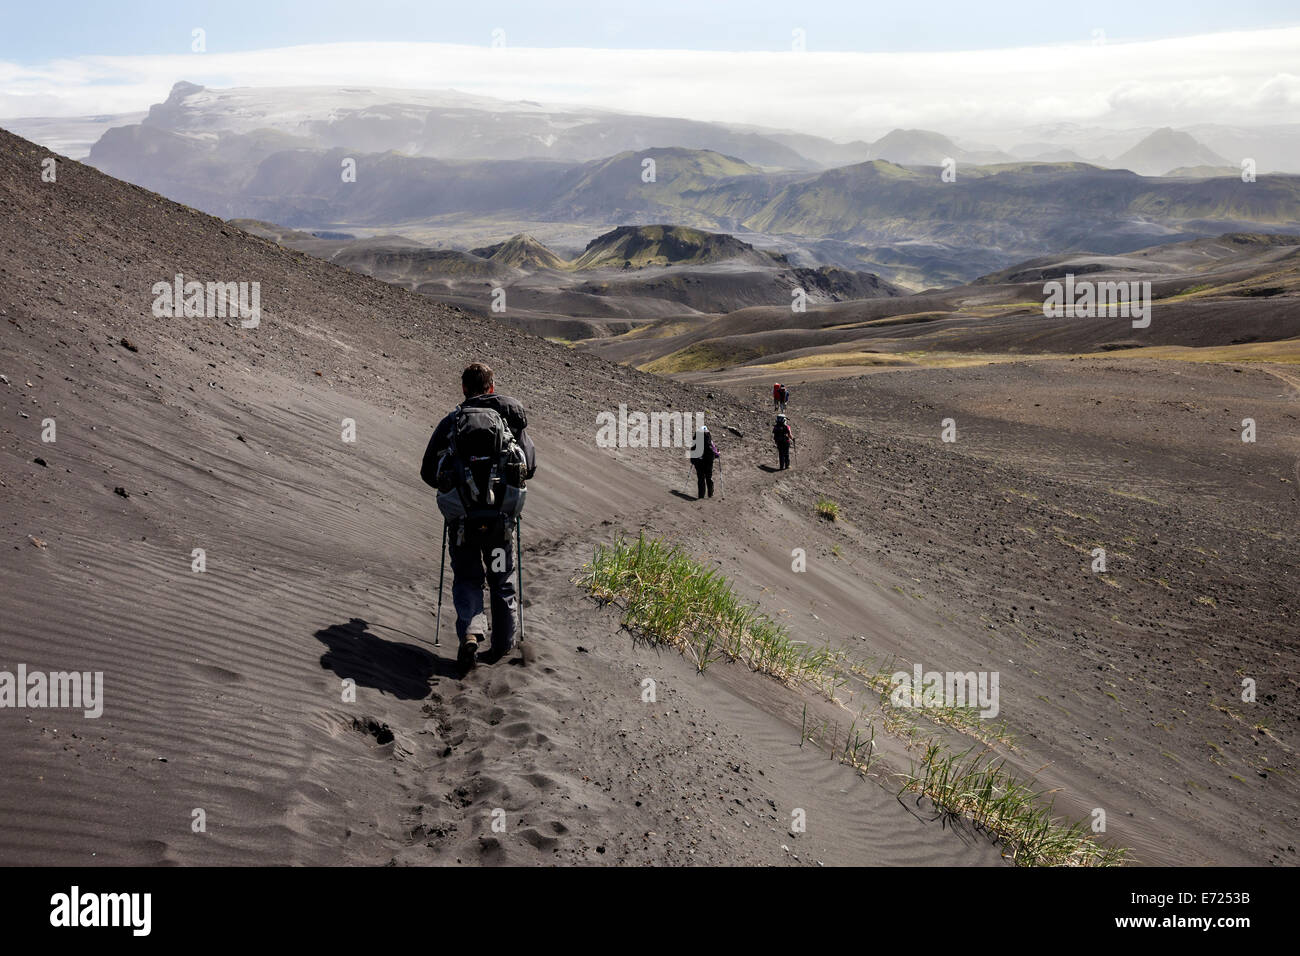 Il Laugavegur Hiking Trail e il Ghiacciaio Myrdalsjokull sotto il quale si trova il vulcano Katla, Emstrur Islanda Foto Stock